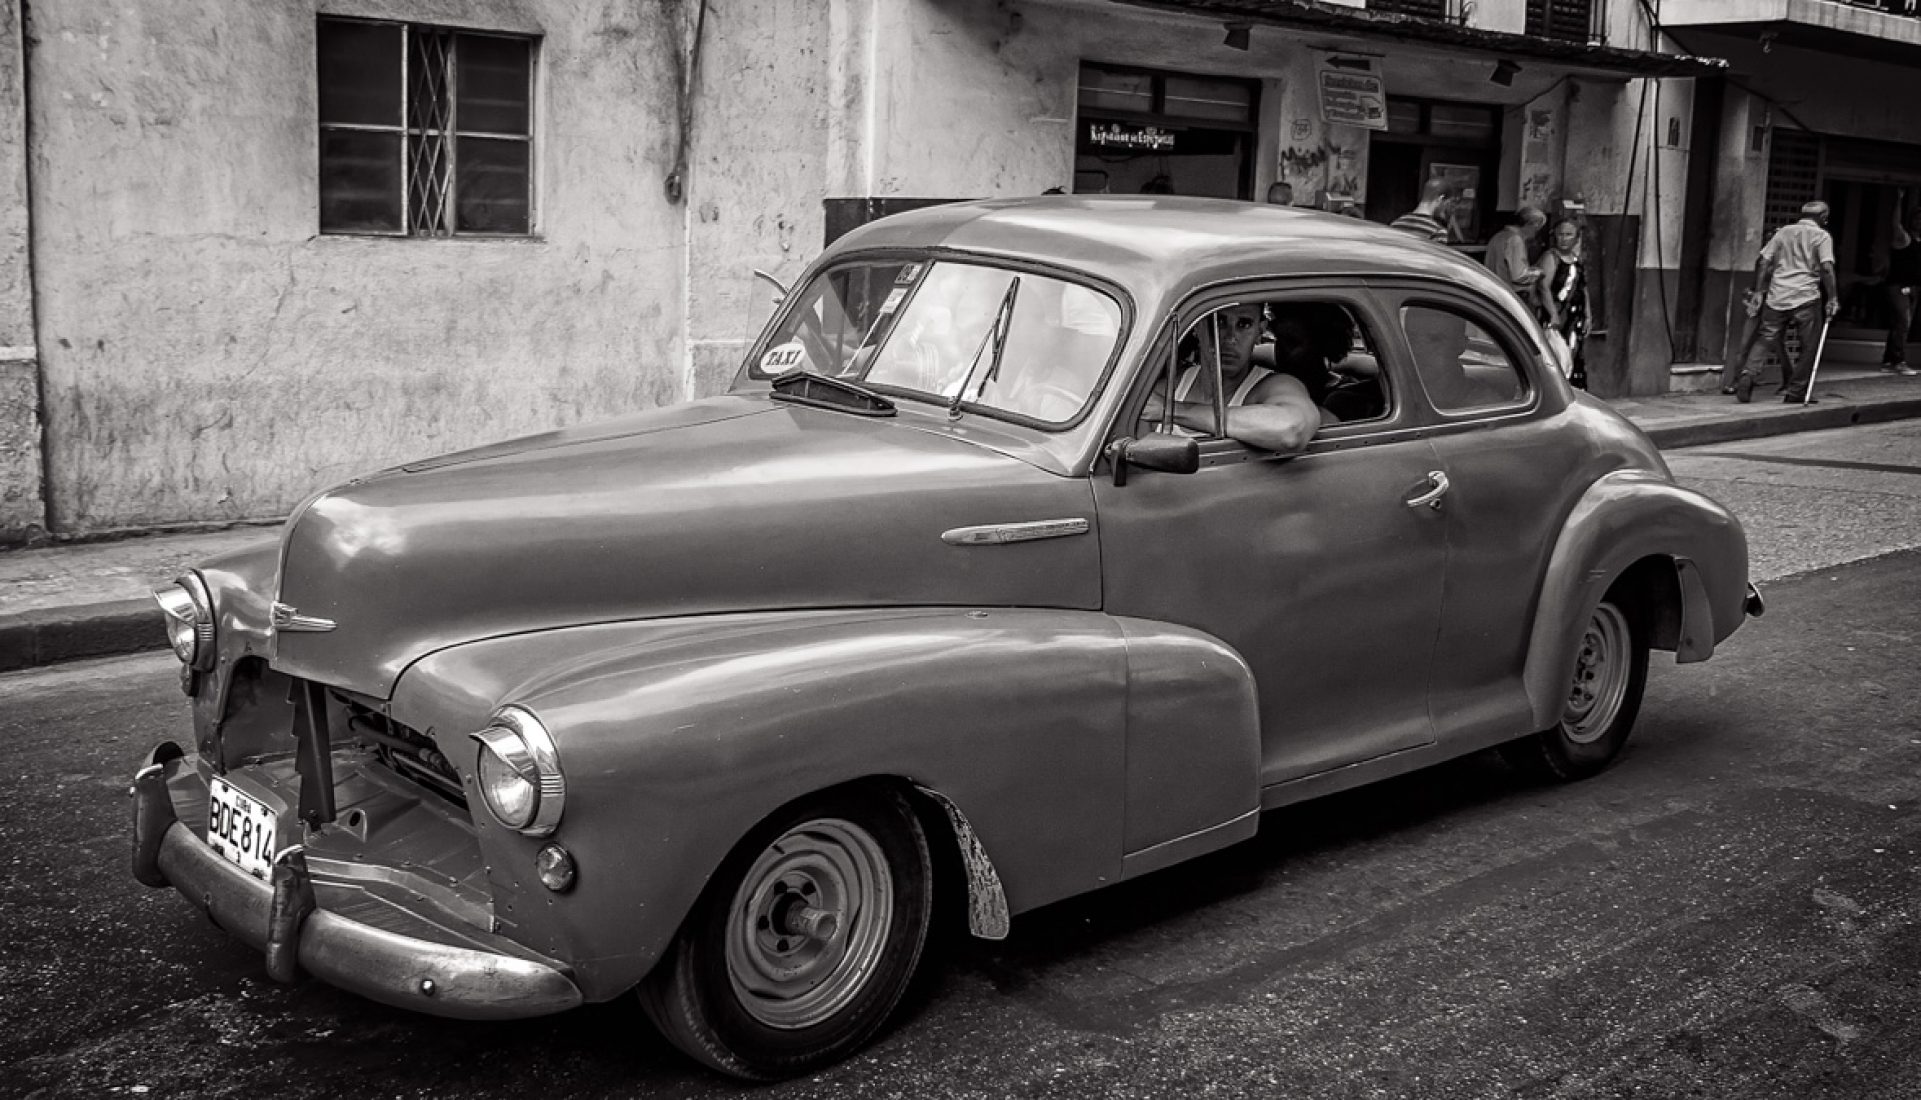 Habana Vieja – Where Time Stood Still